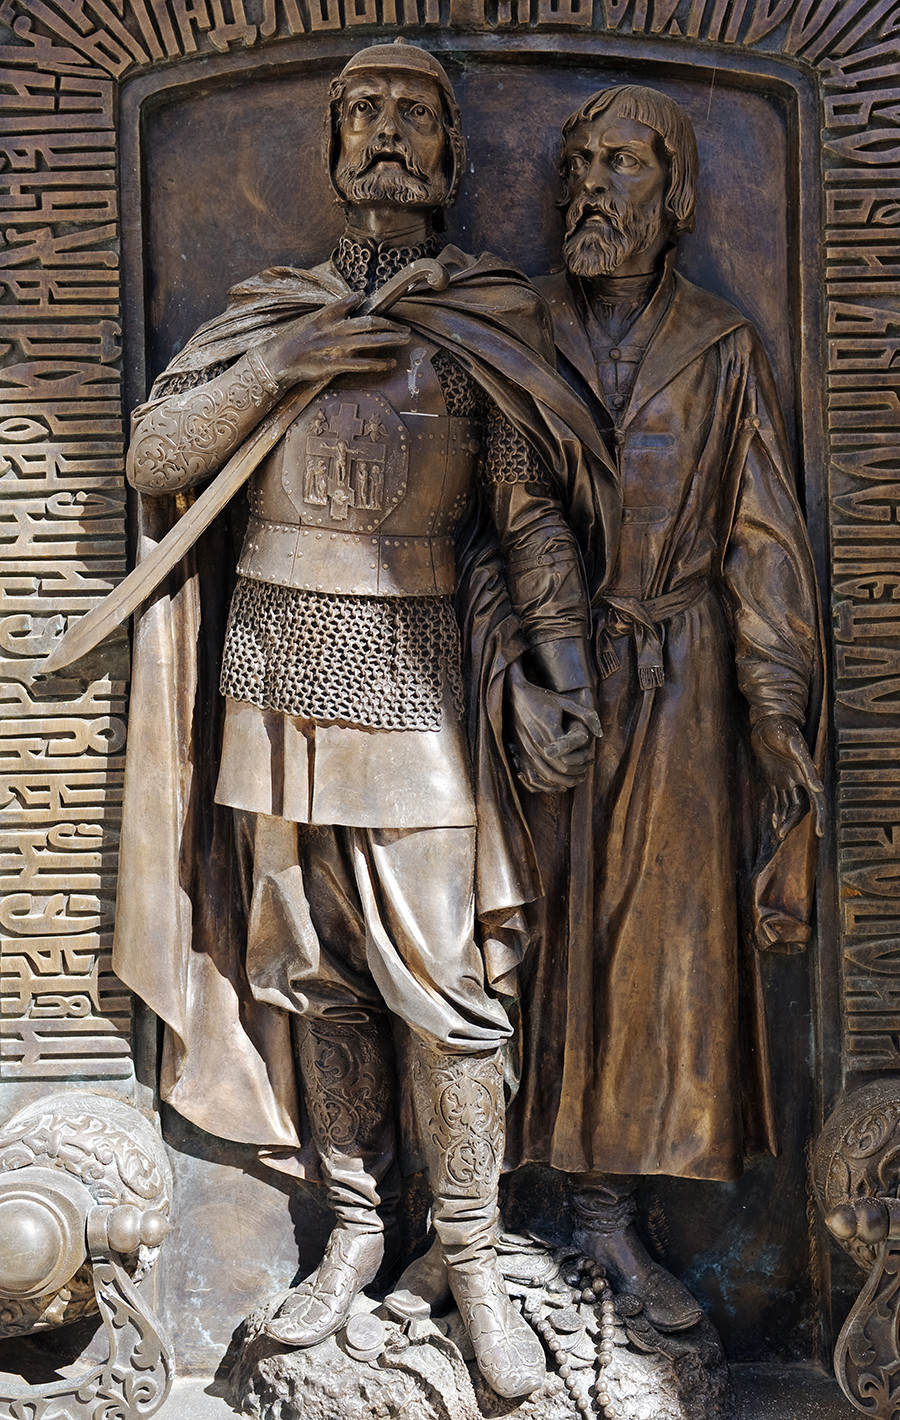 Rusija, Suzdal, Manstir prepodobnog Jefimija. Brončani reljef s likovima Požarskog i Minjina na vratima male kapele u kojoj se nalazi grob Požarskog.